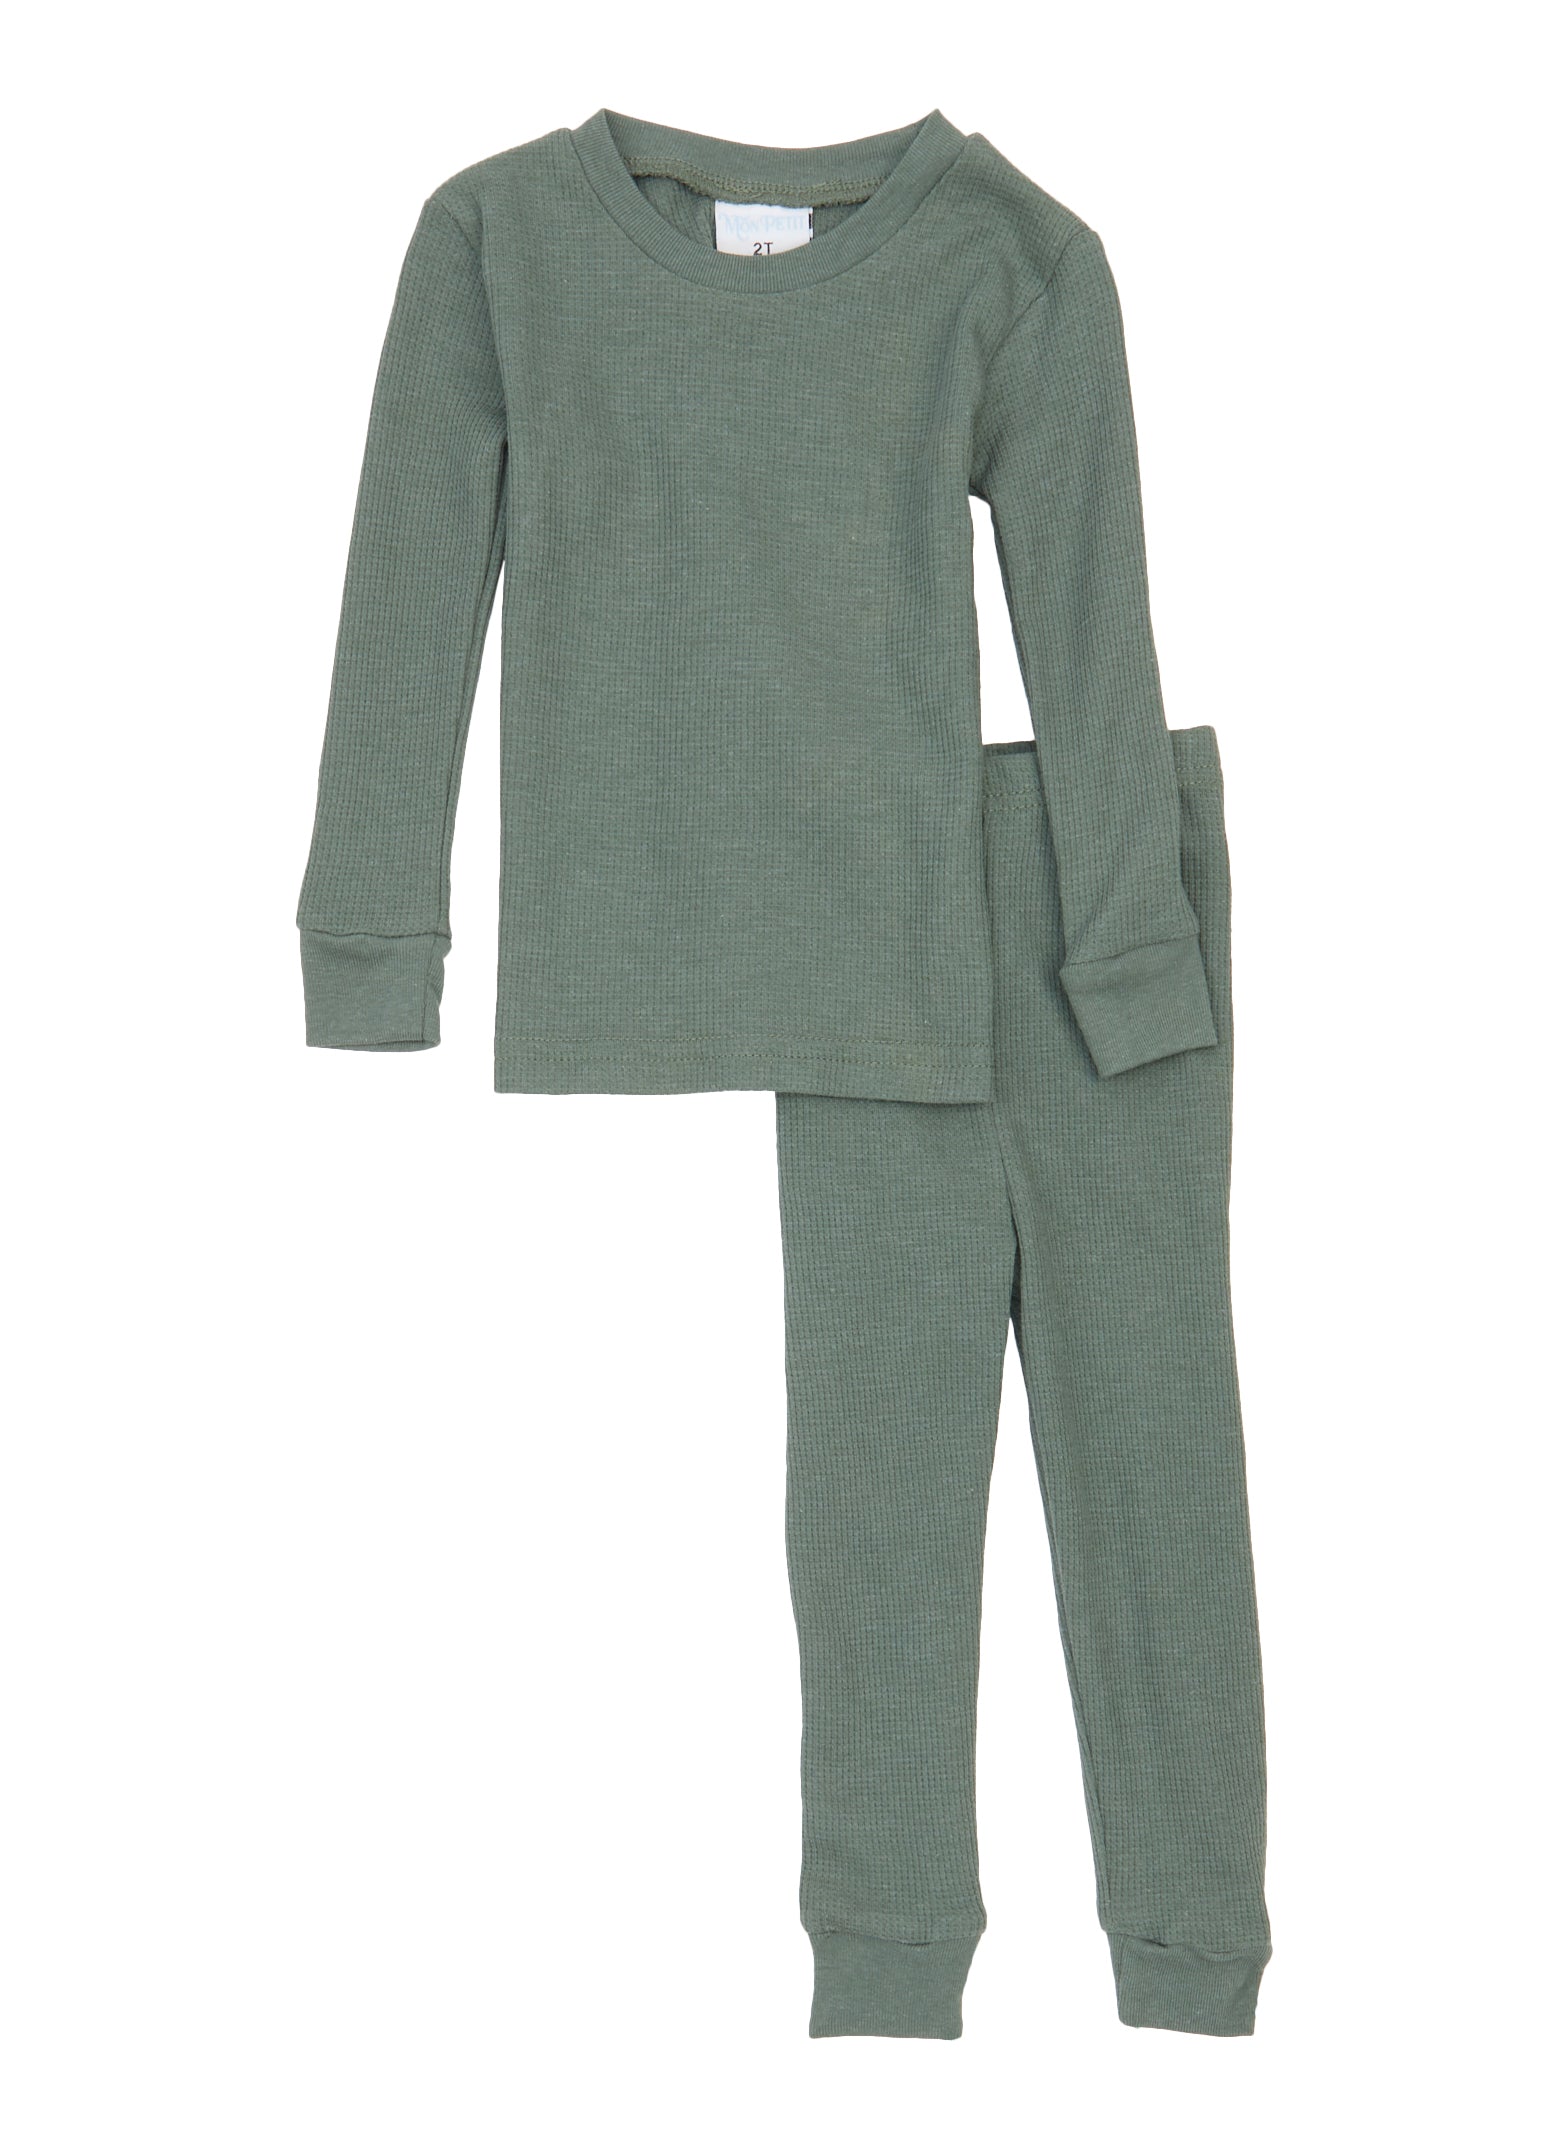 Unisex Kids Thermal Underwear Thermal Long Johns Set Shirt & Pants